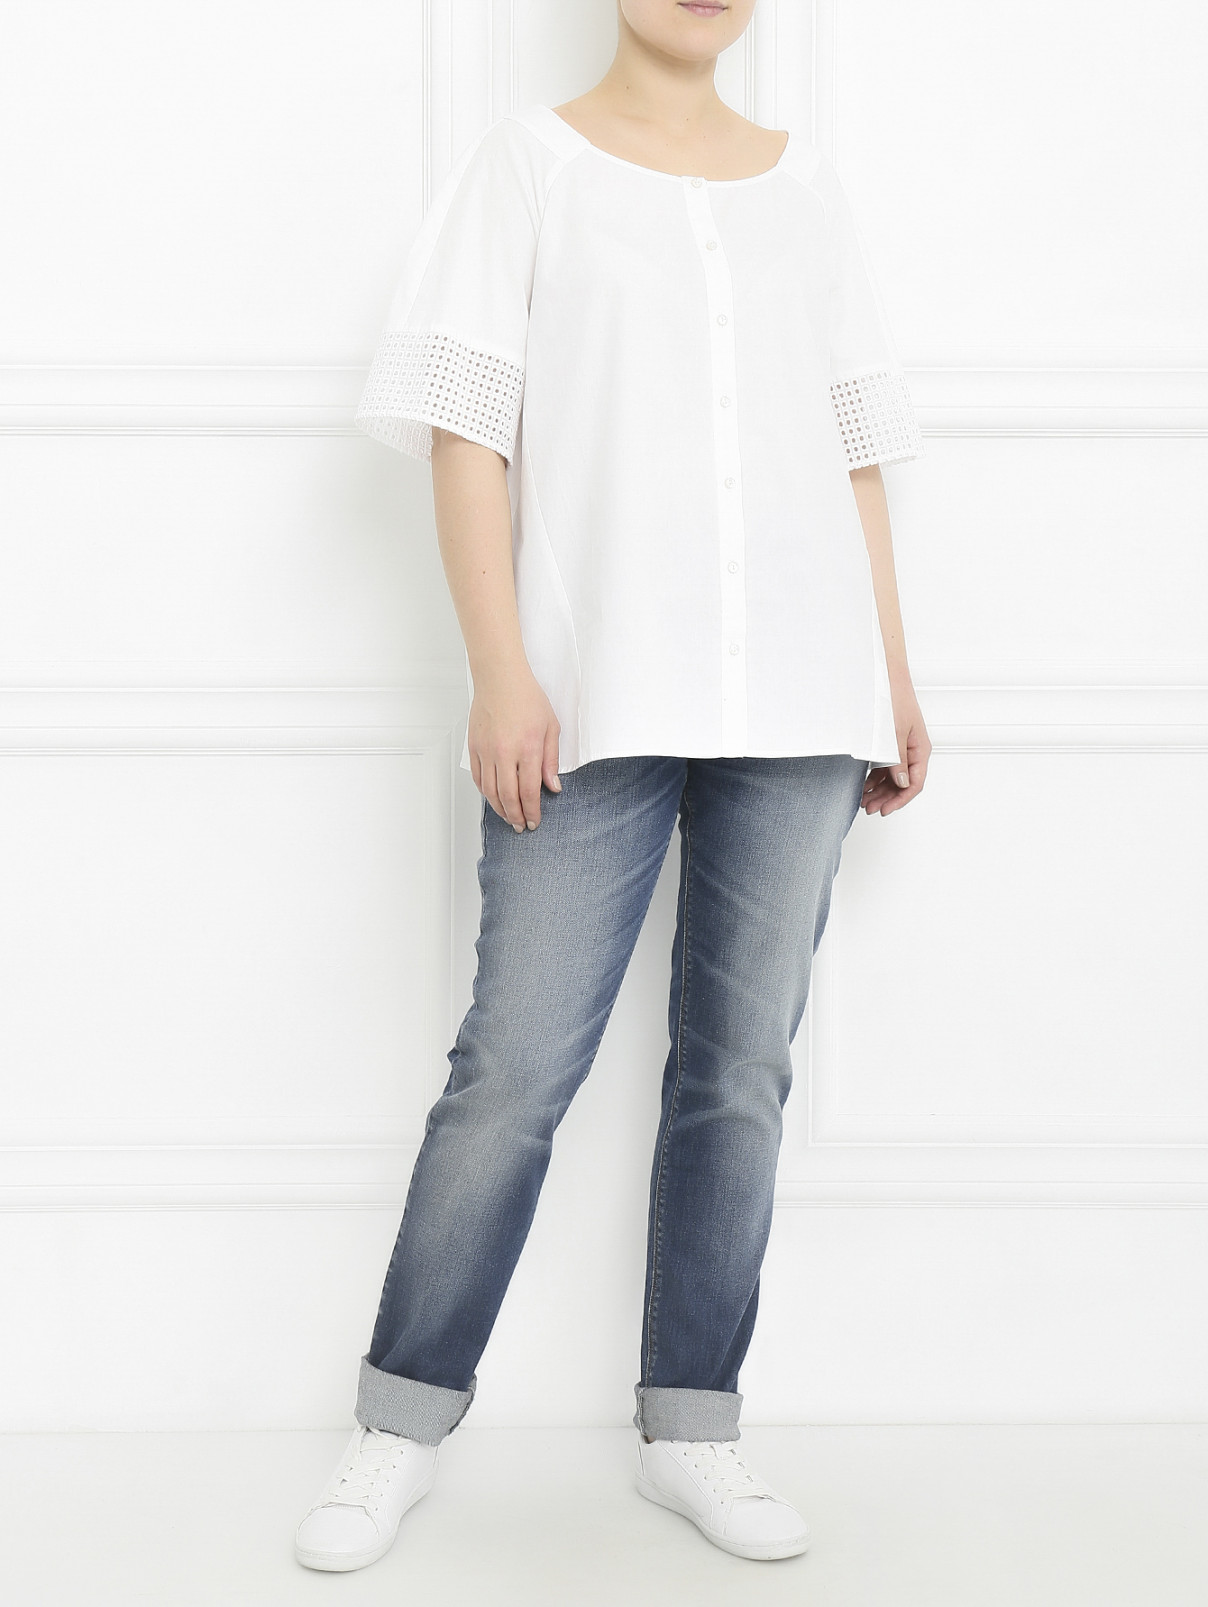 Блуза из хлопка Marina Sport  –  Модель Общий вид  – Цвет:  Белый